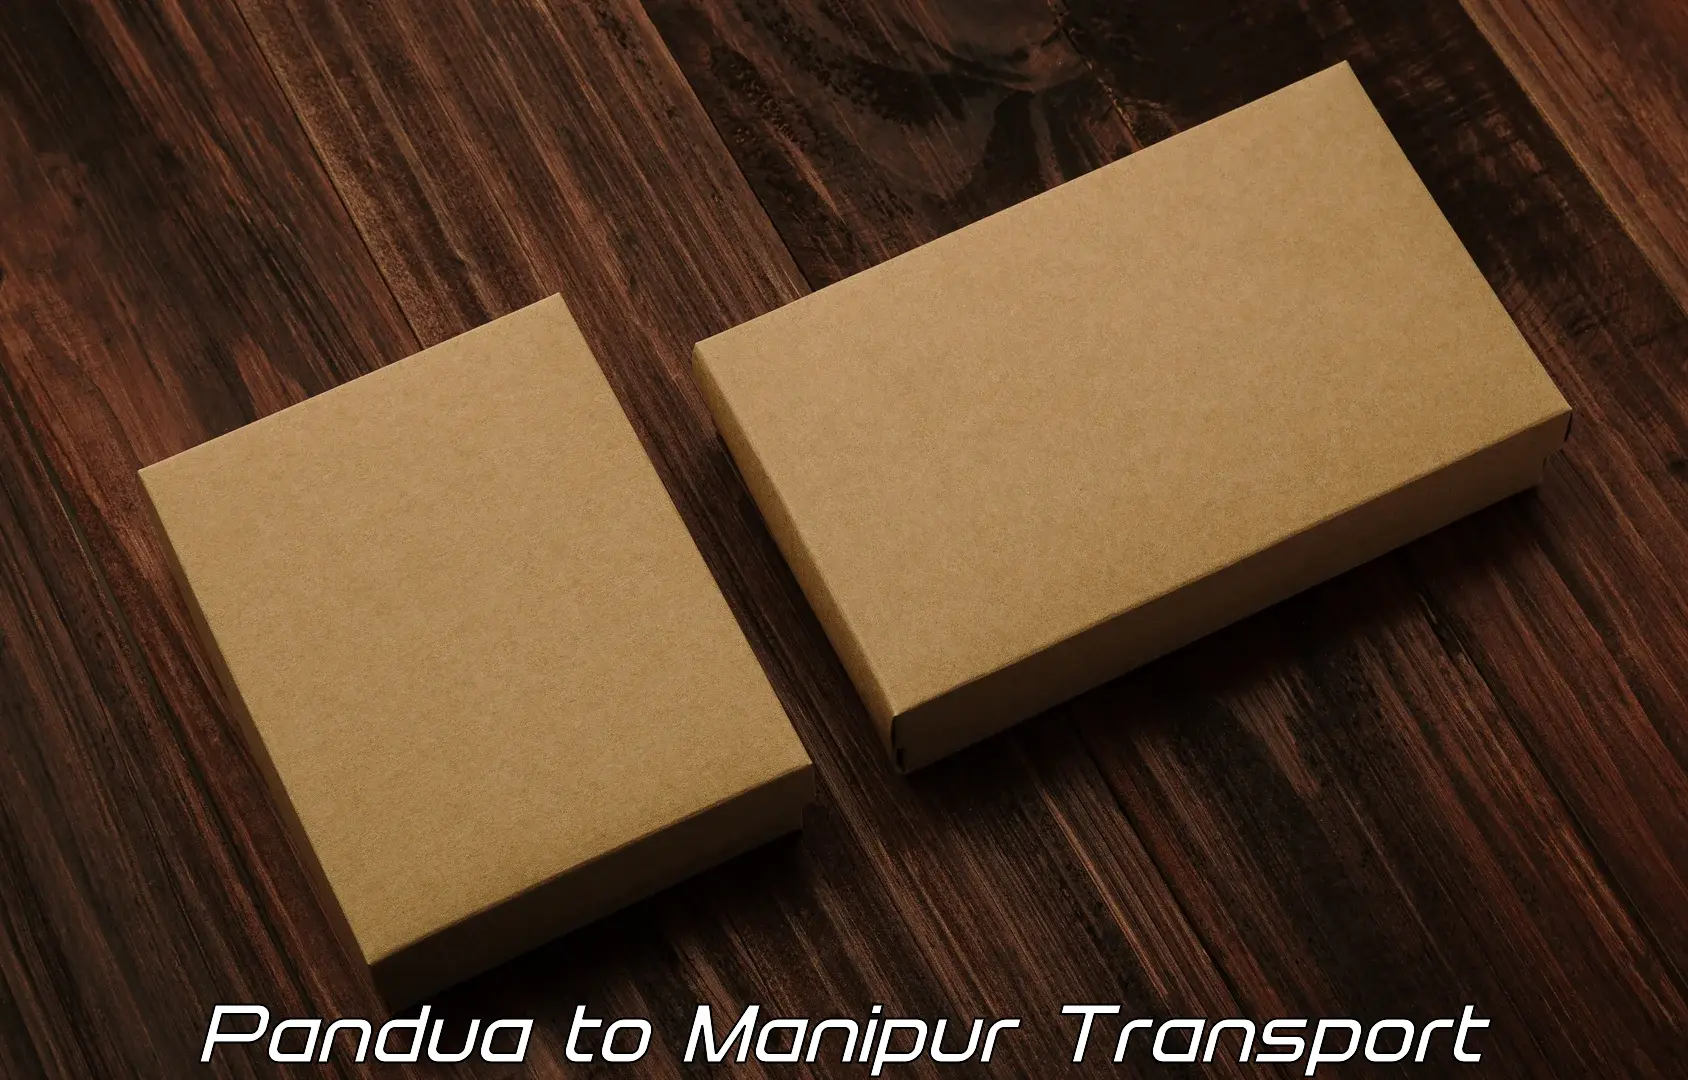 Transport services Pandua to Kaptipada